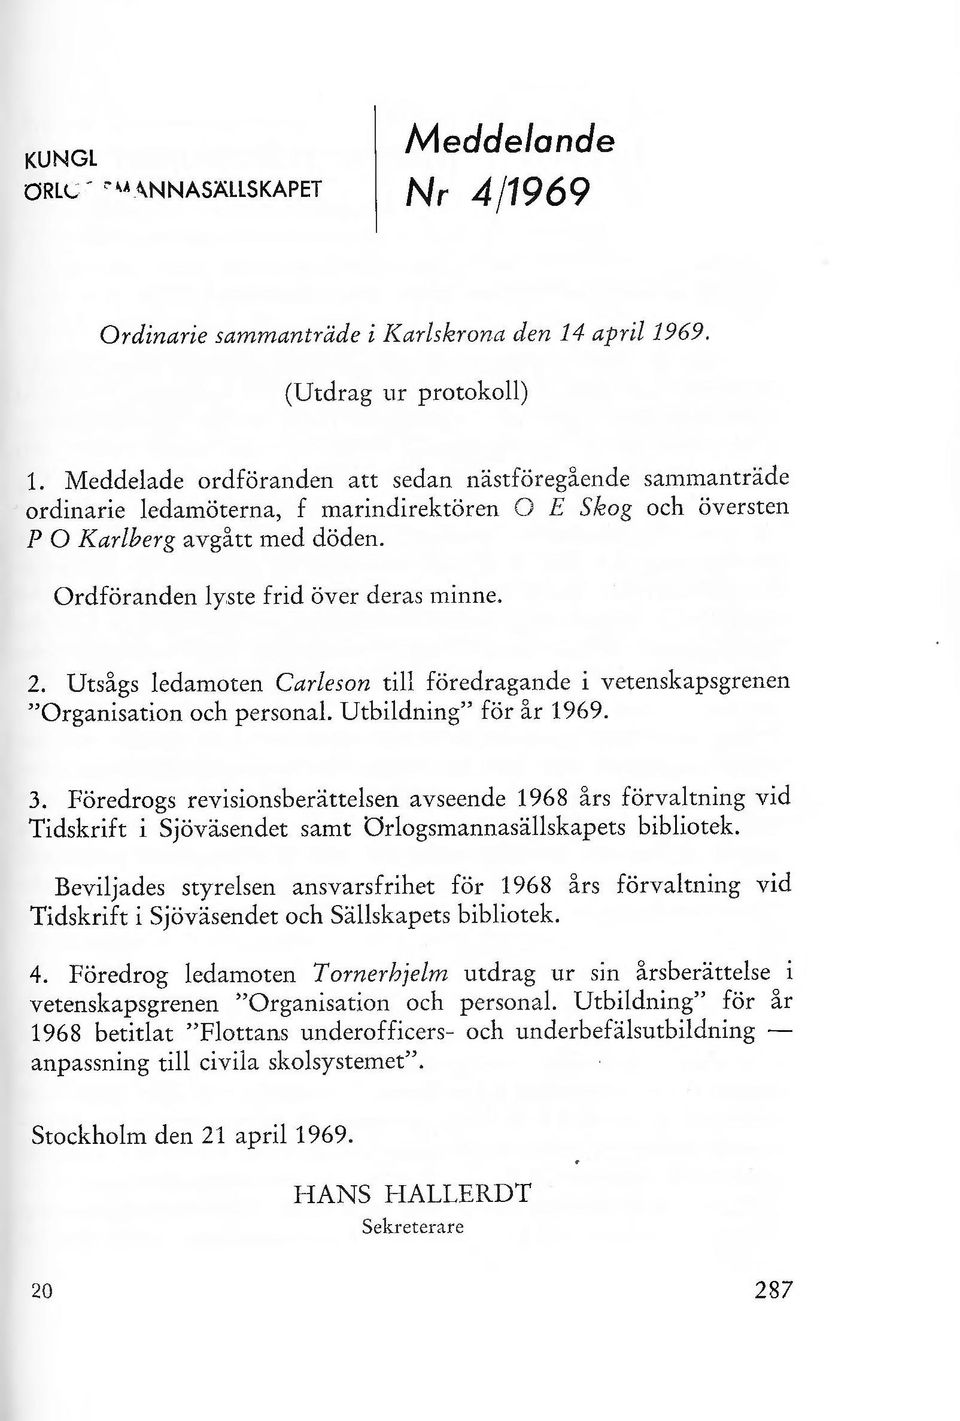 Utsågs edamoten Careson ti föredragande i vetenskapsgrenen "Organisation och persona. Utbidning" för år 1969. 3.